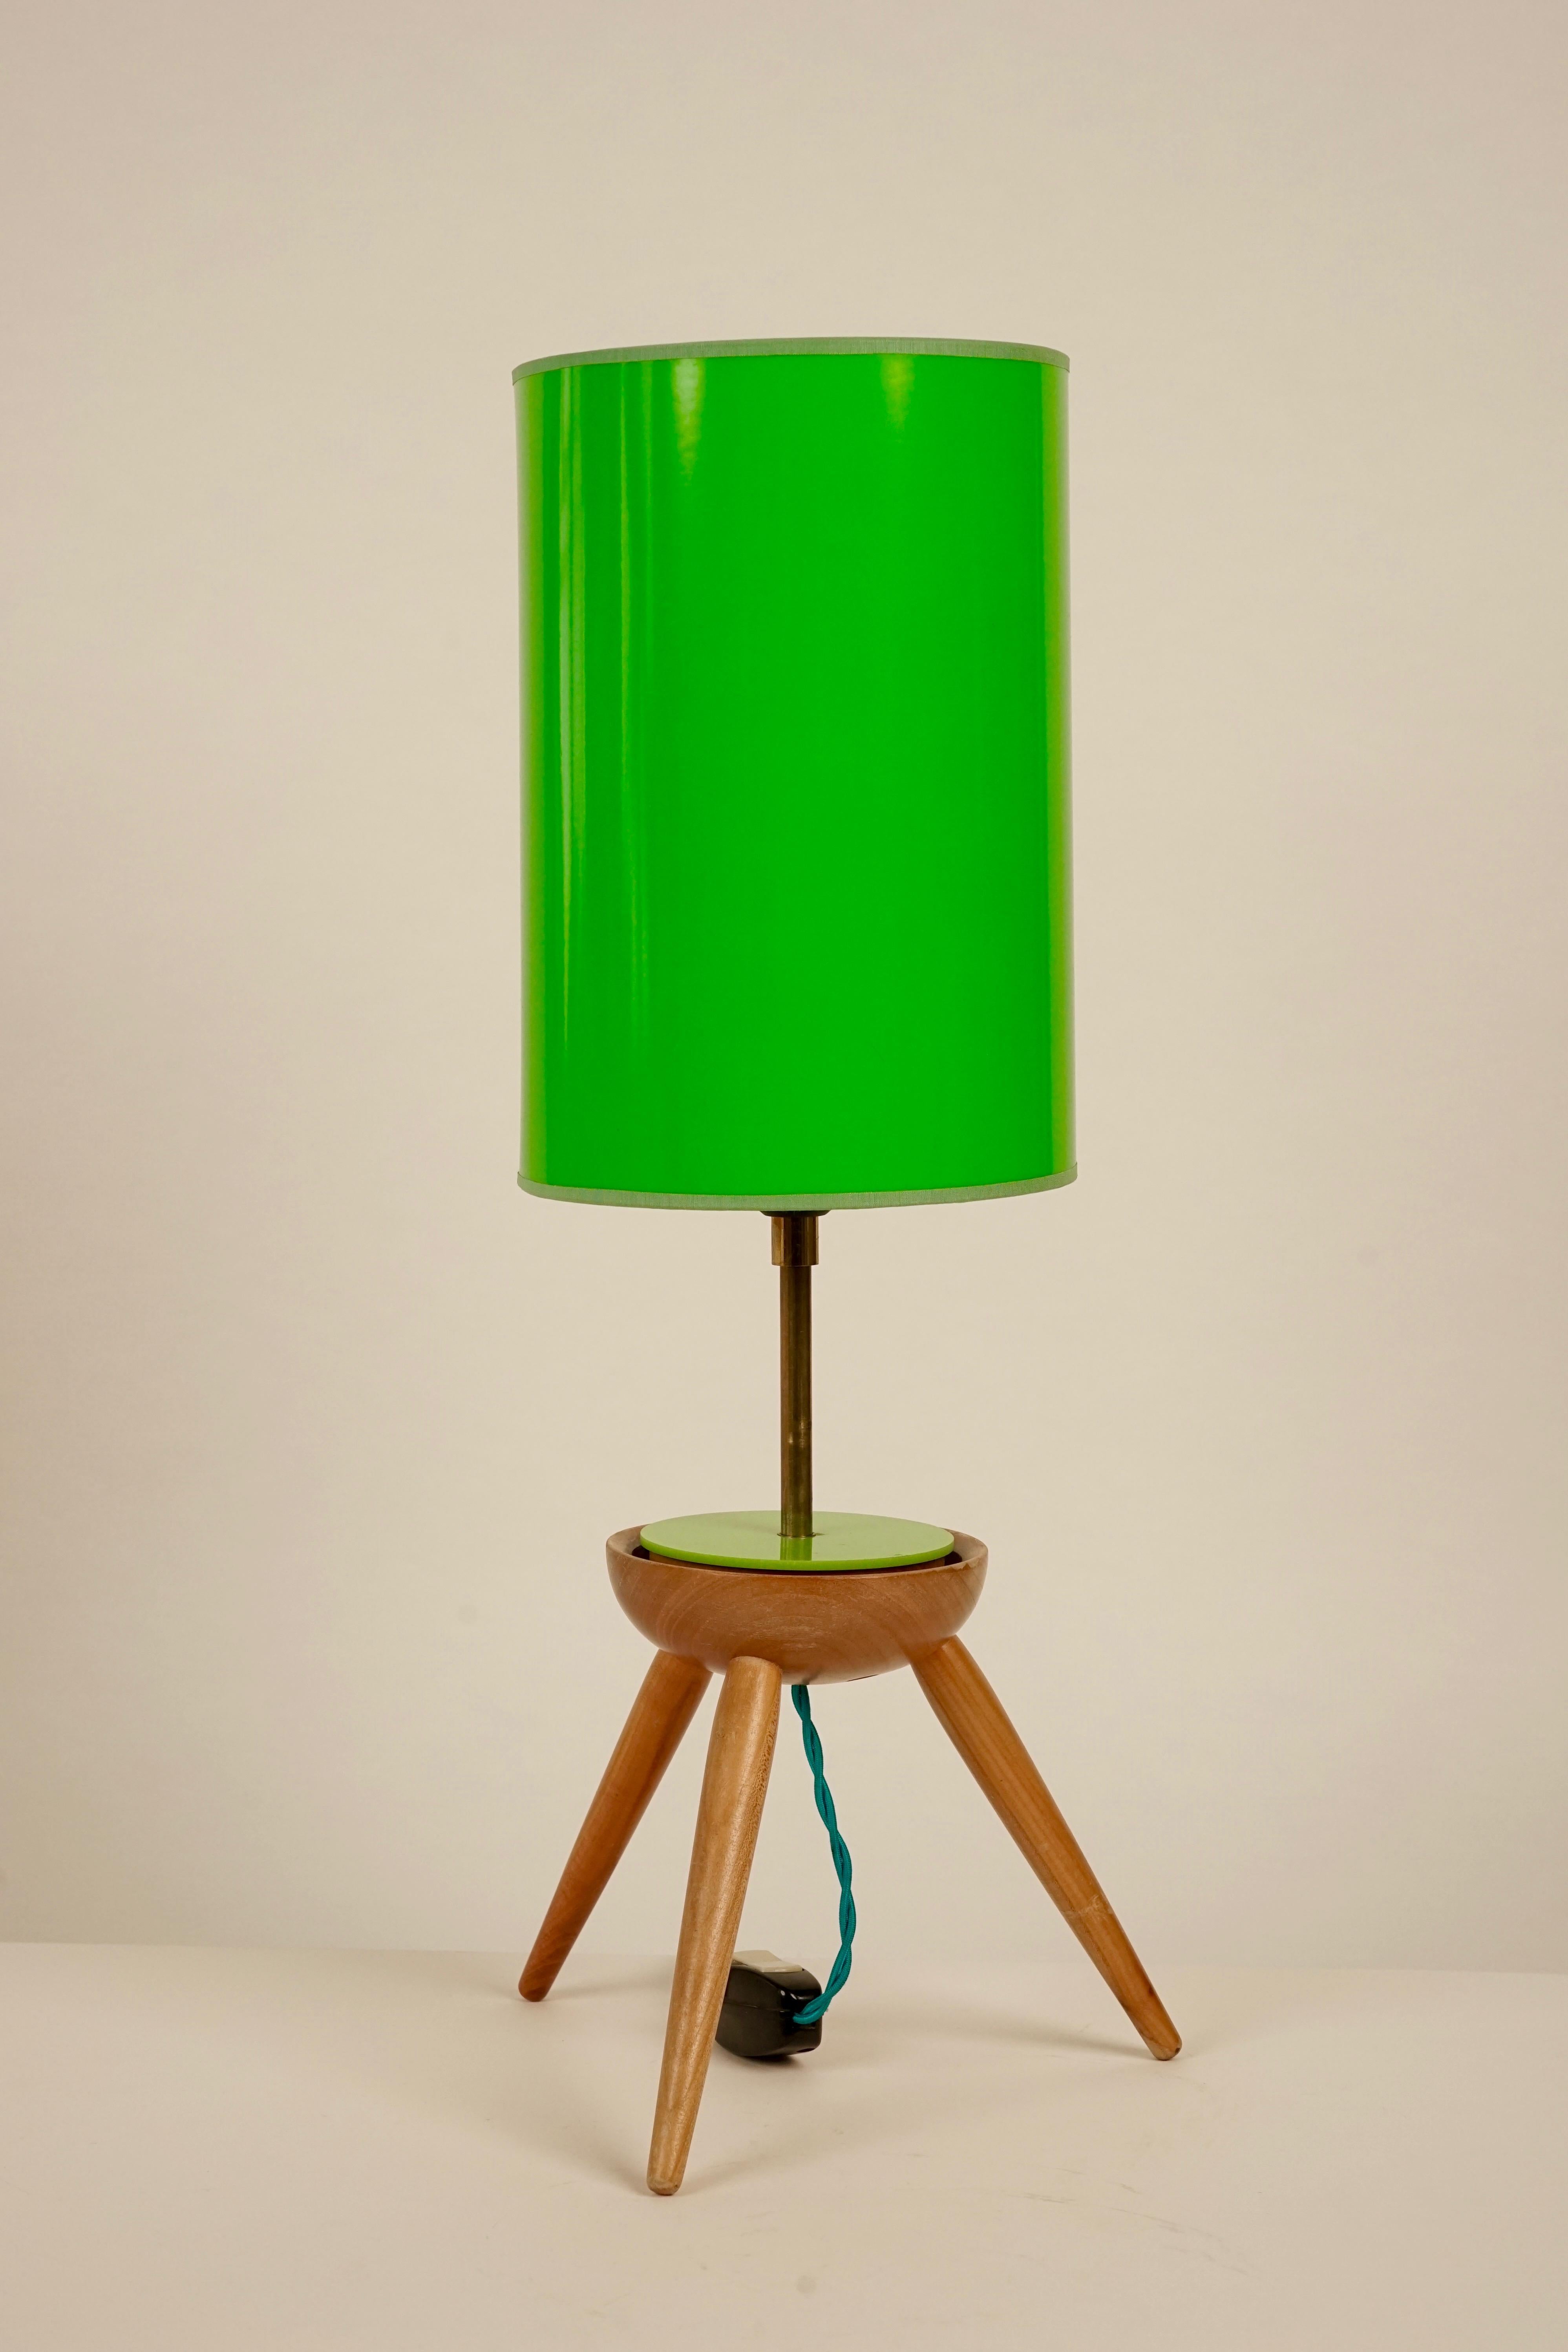 Cette magnifique lampe de table du milieu du siècle en provenance de Tchécoslovaquie a été conçue pour la société Krasna jizba et est composée de bois et de plastique.
La teinte est nouvelle, mais correspond à l'original. Il est livré avec un